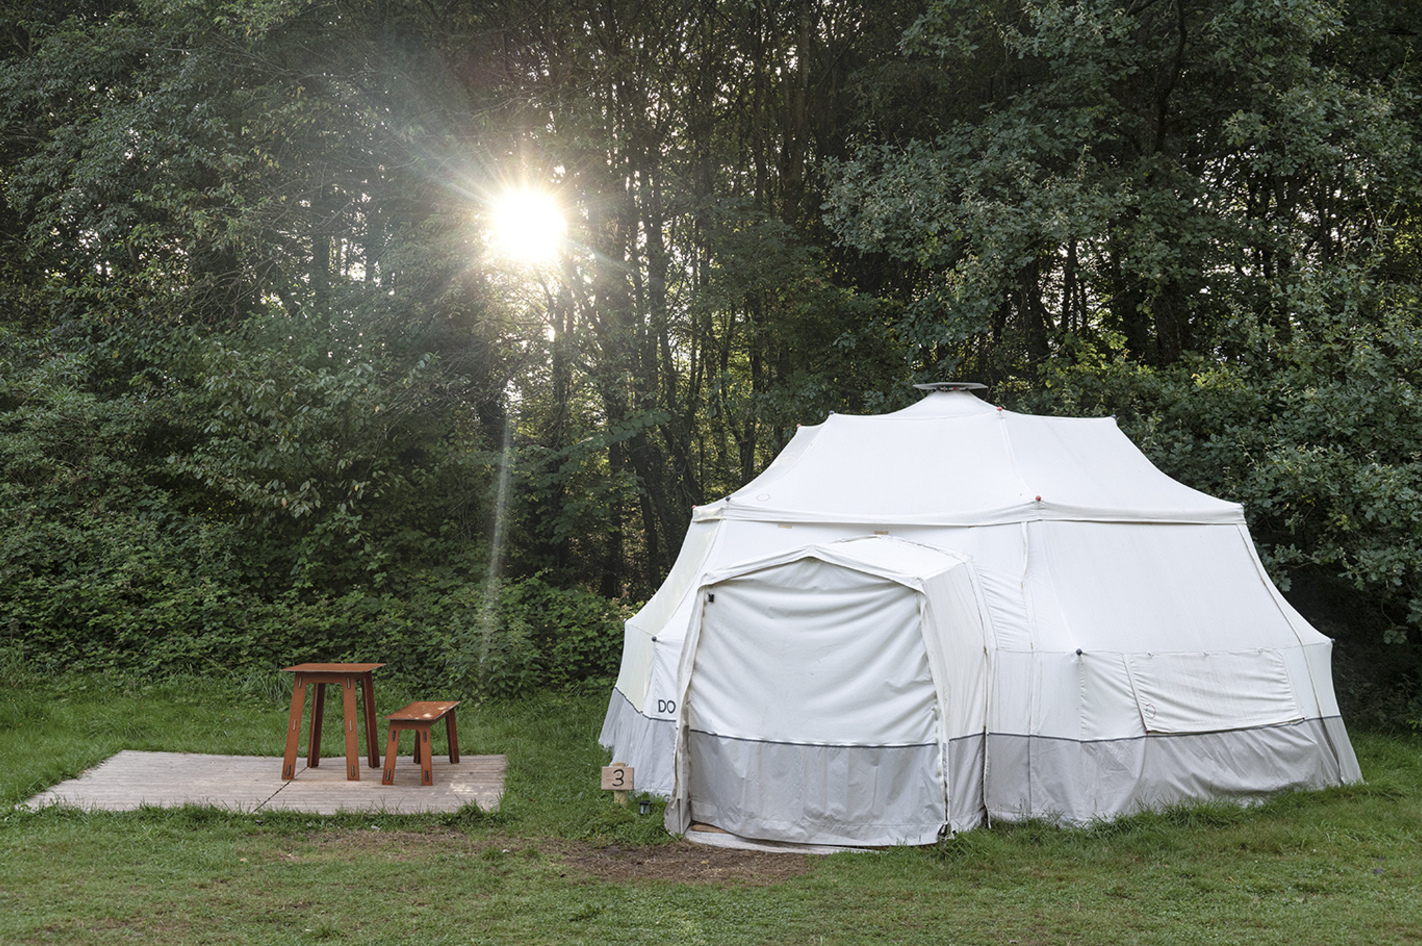 Glamping Losheim im Zelt für 4 (2 Nächte) – Übernachten auf dem Camping Platz mit Glamping-Komfort